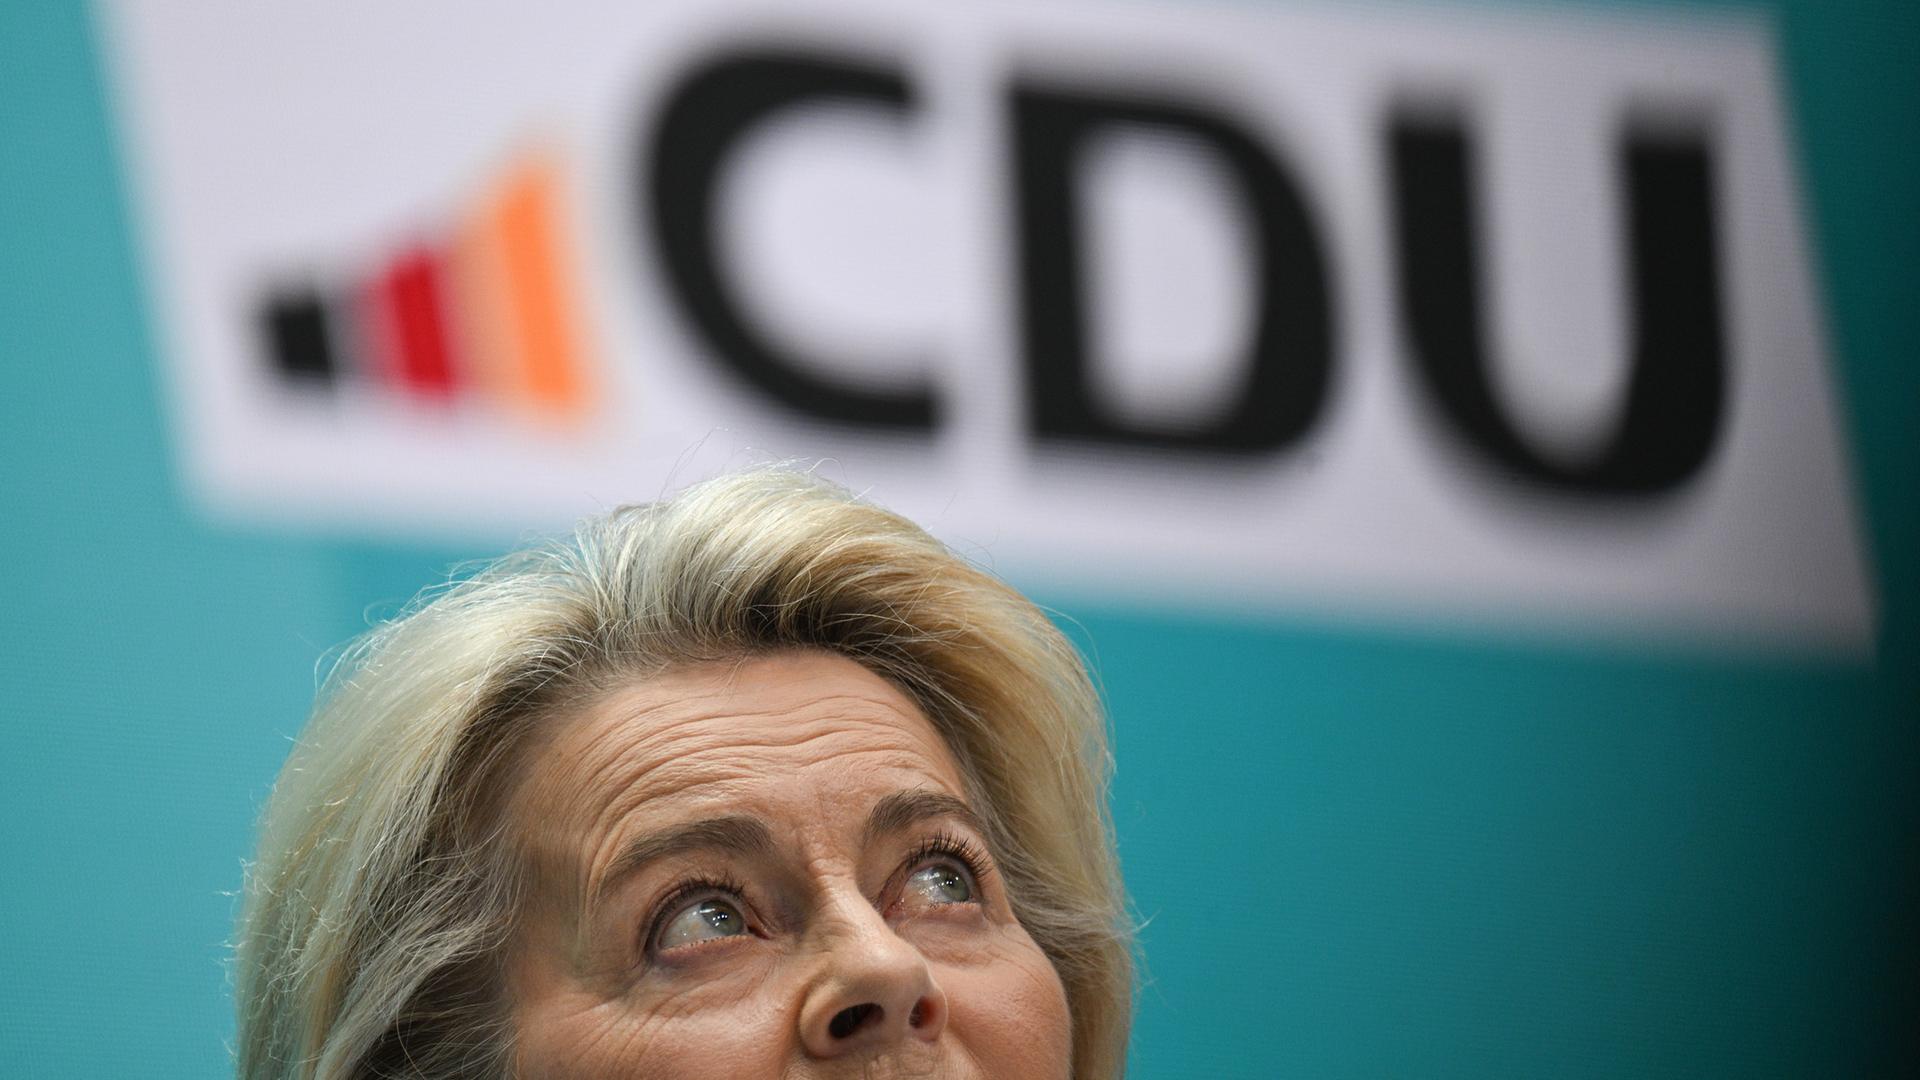 Ursula von der Leyen, Spitzenkandidatin der CDU für die Europawahl sowie Präsidentin der Europäischen Kommission, steht während einer Pressekonferenz nach der Bundesvorstandssitzung der CDU im Konrad-Adenauer-Haus unter einem CDU-Logo. 